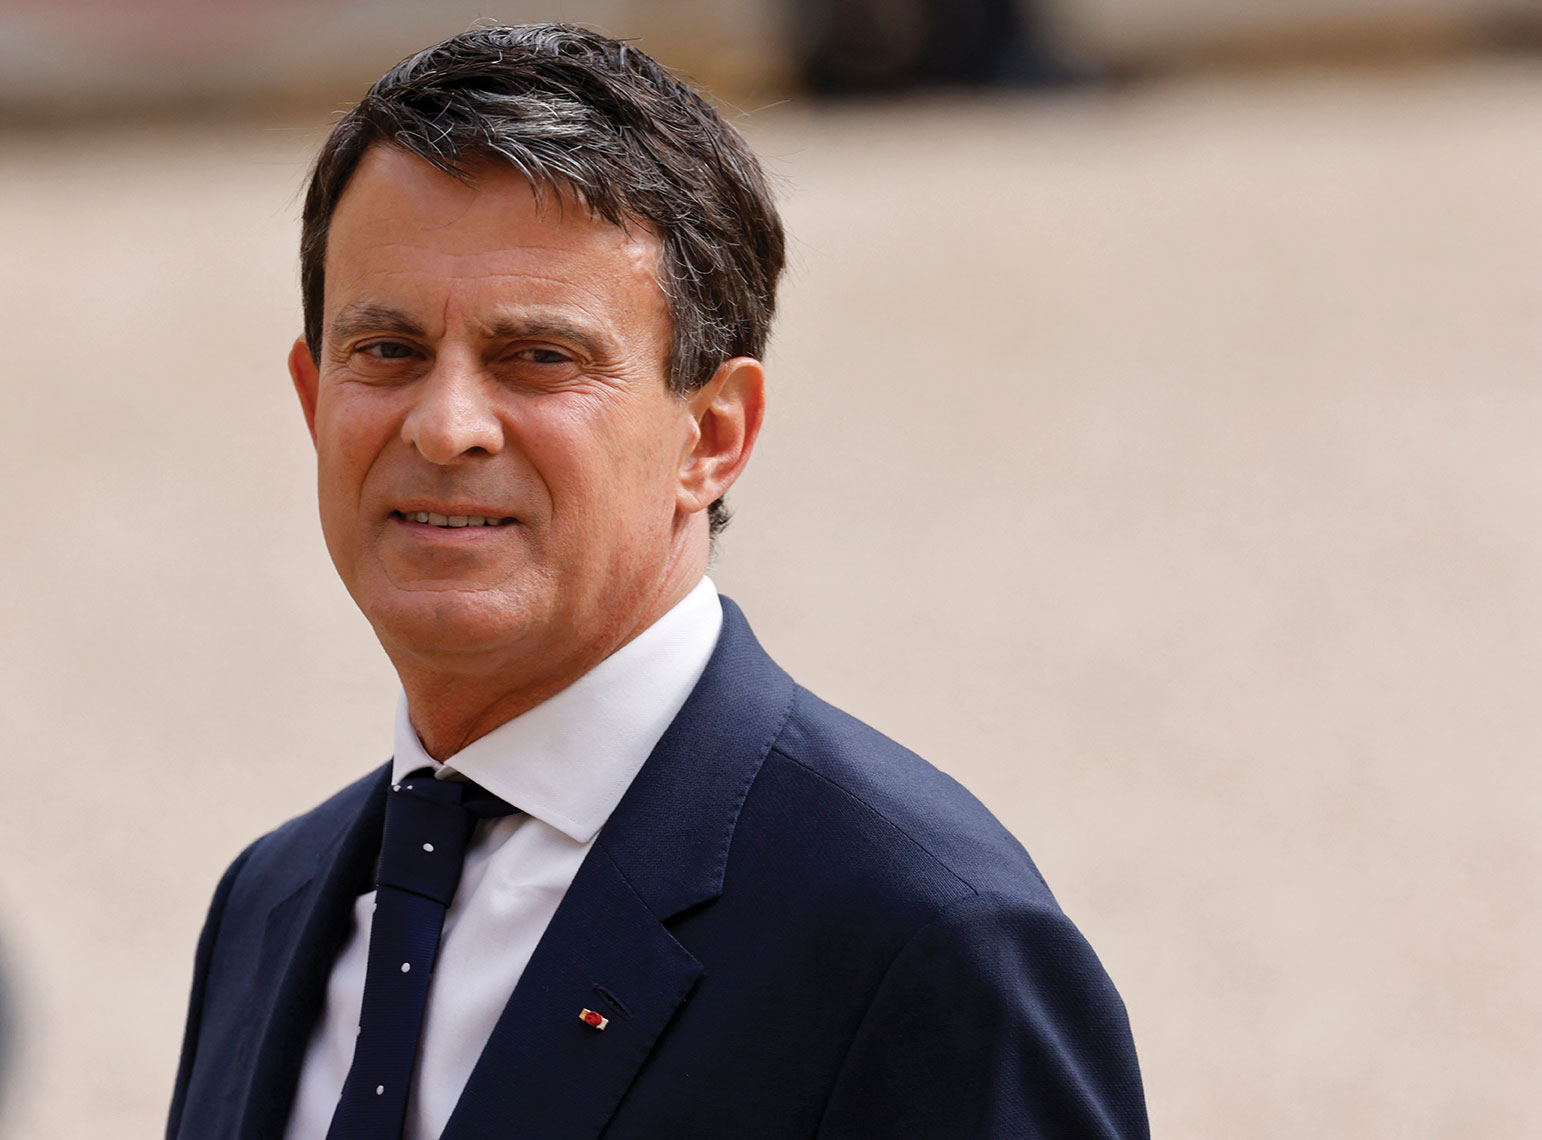 Investi par la majorité présidentielle pour représenter les Français de l'étranger, Manuel Valls a été éliminé dimanche dès le premier tour. Ludovic MARIN / AFP